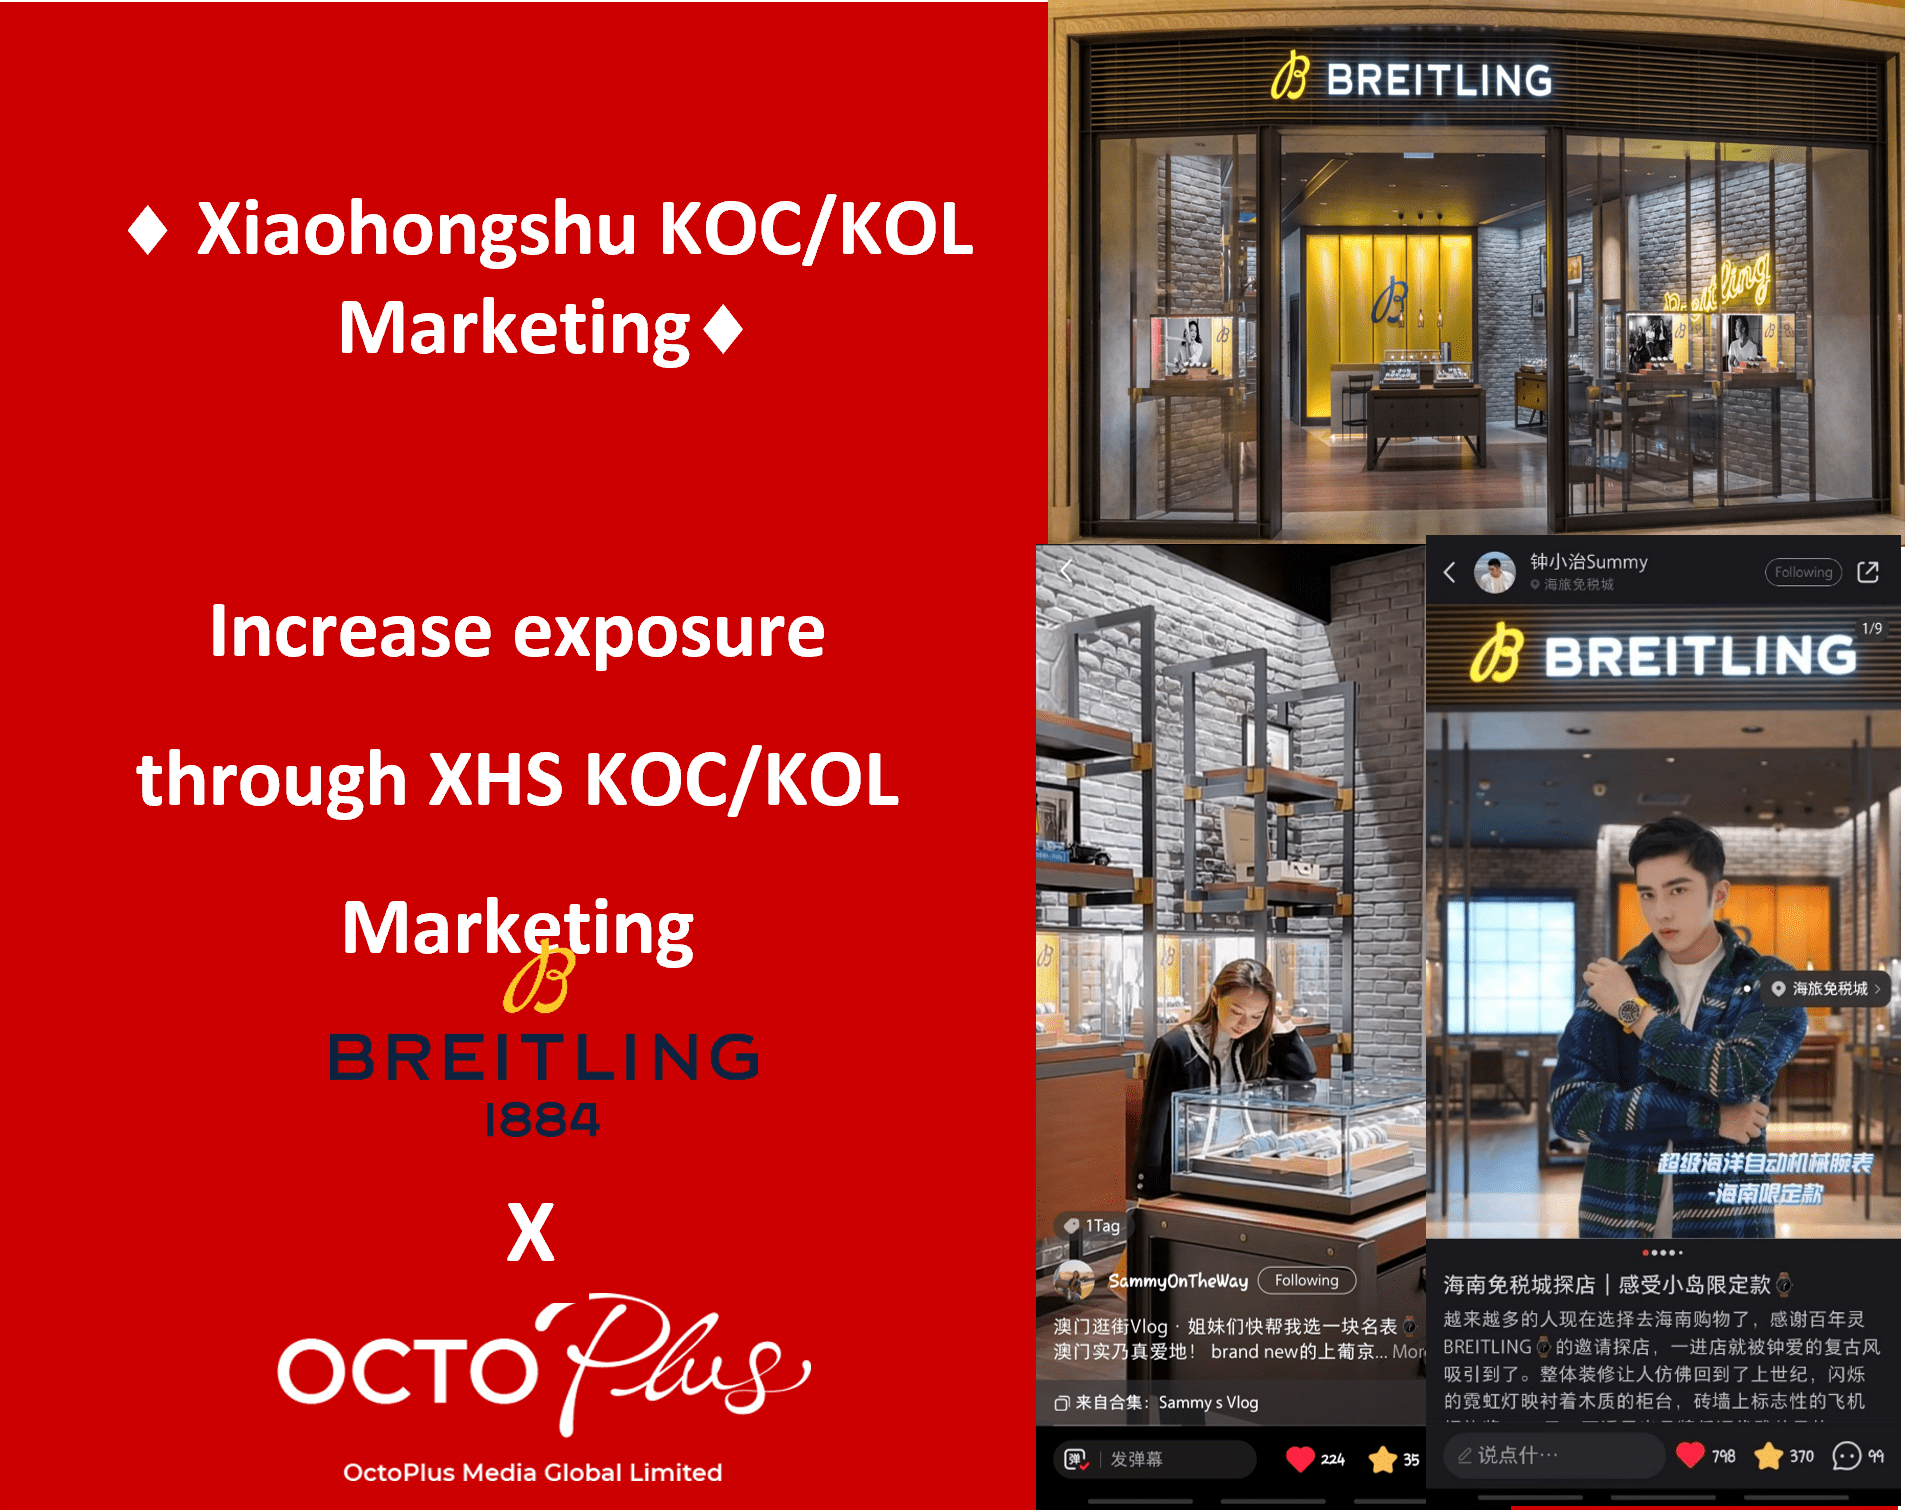 Xiaohongshu KOC marketing - Breitling